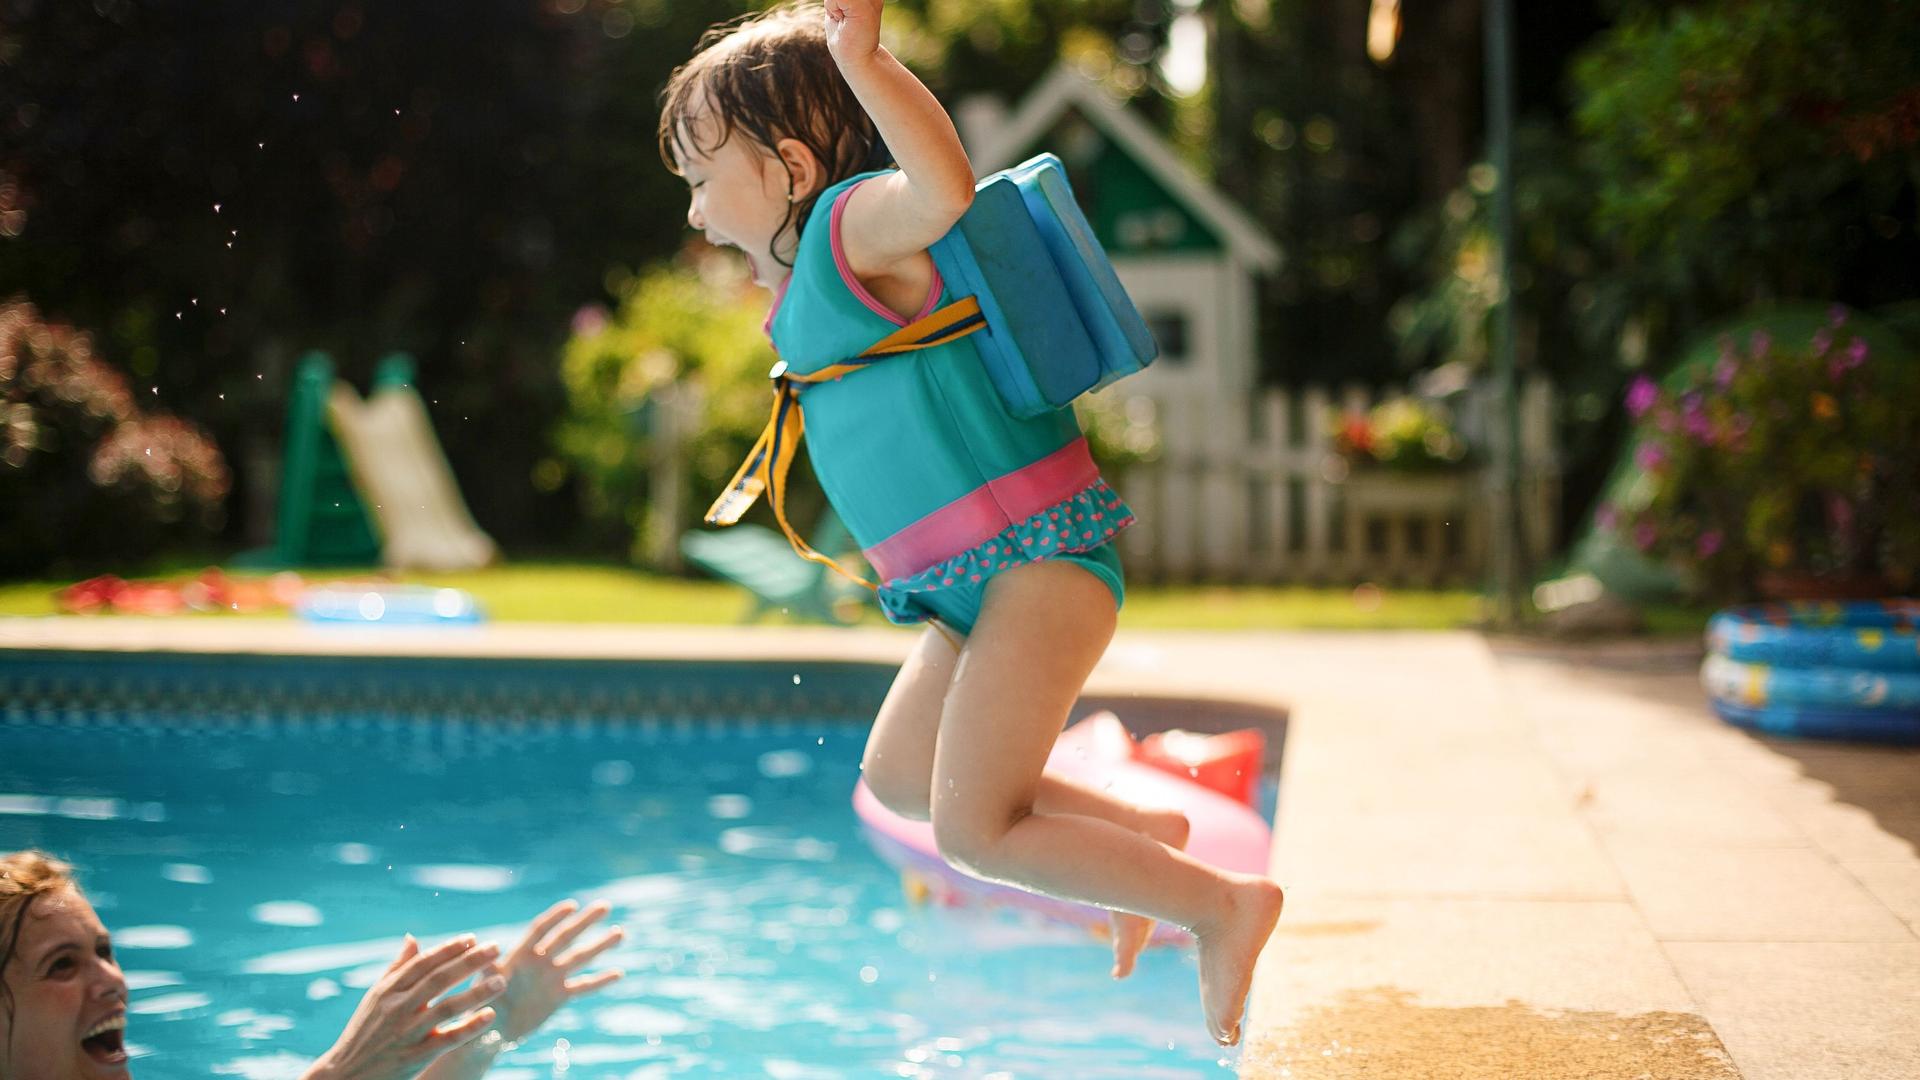 Ein Mädchen im Kindergartenalter springt mit Schwimmweste in einen Pool. Ein Mann steht im Wasser und streckt ihr die Arme entgegen.